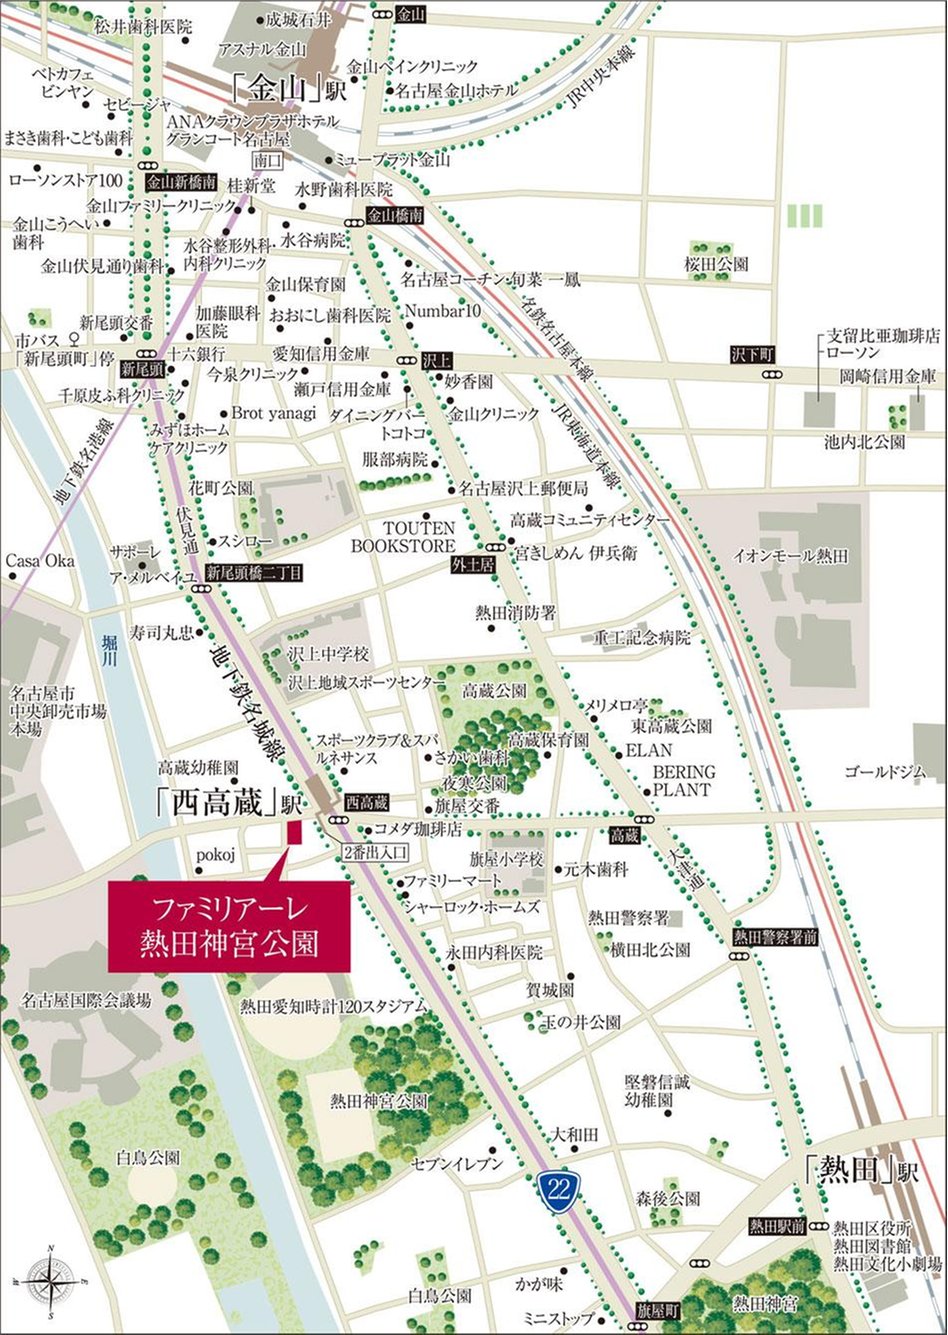 ファミリアーレ熱田神宮公園の交通アクセス図